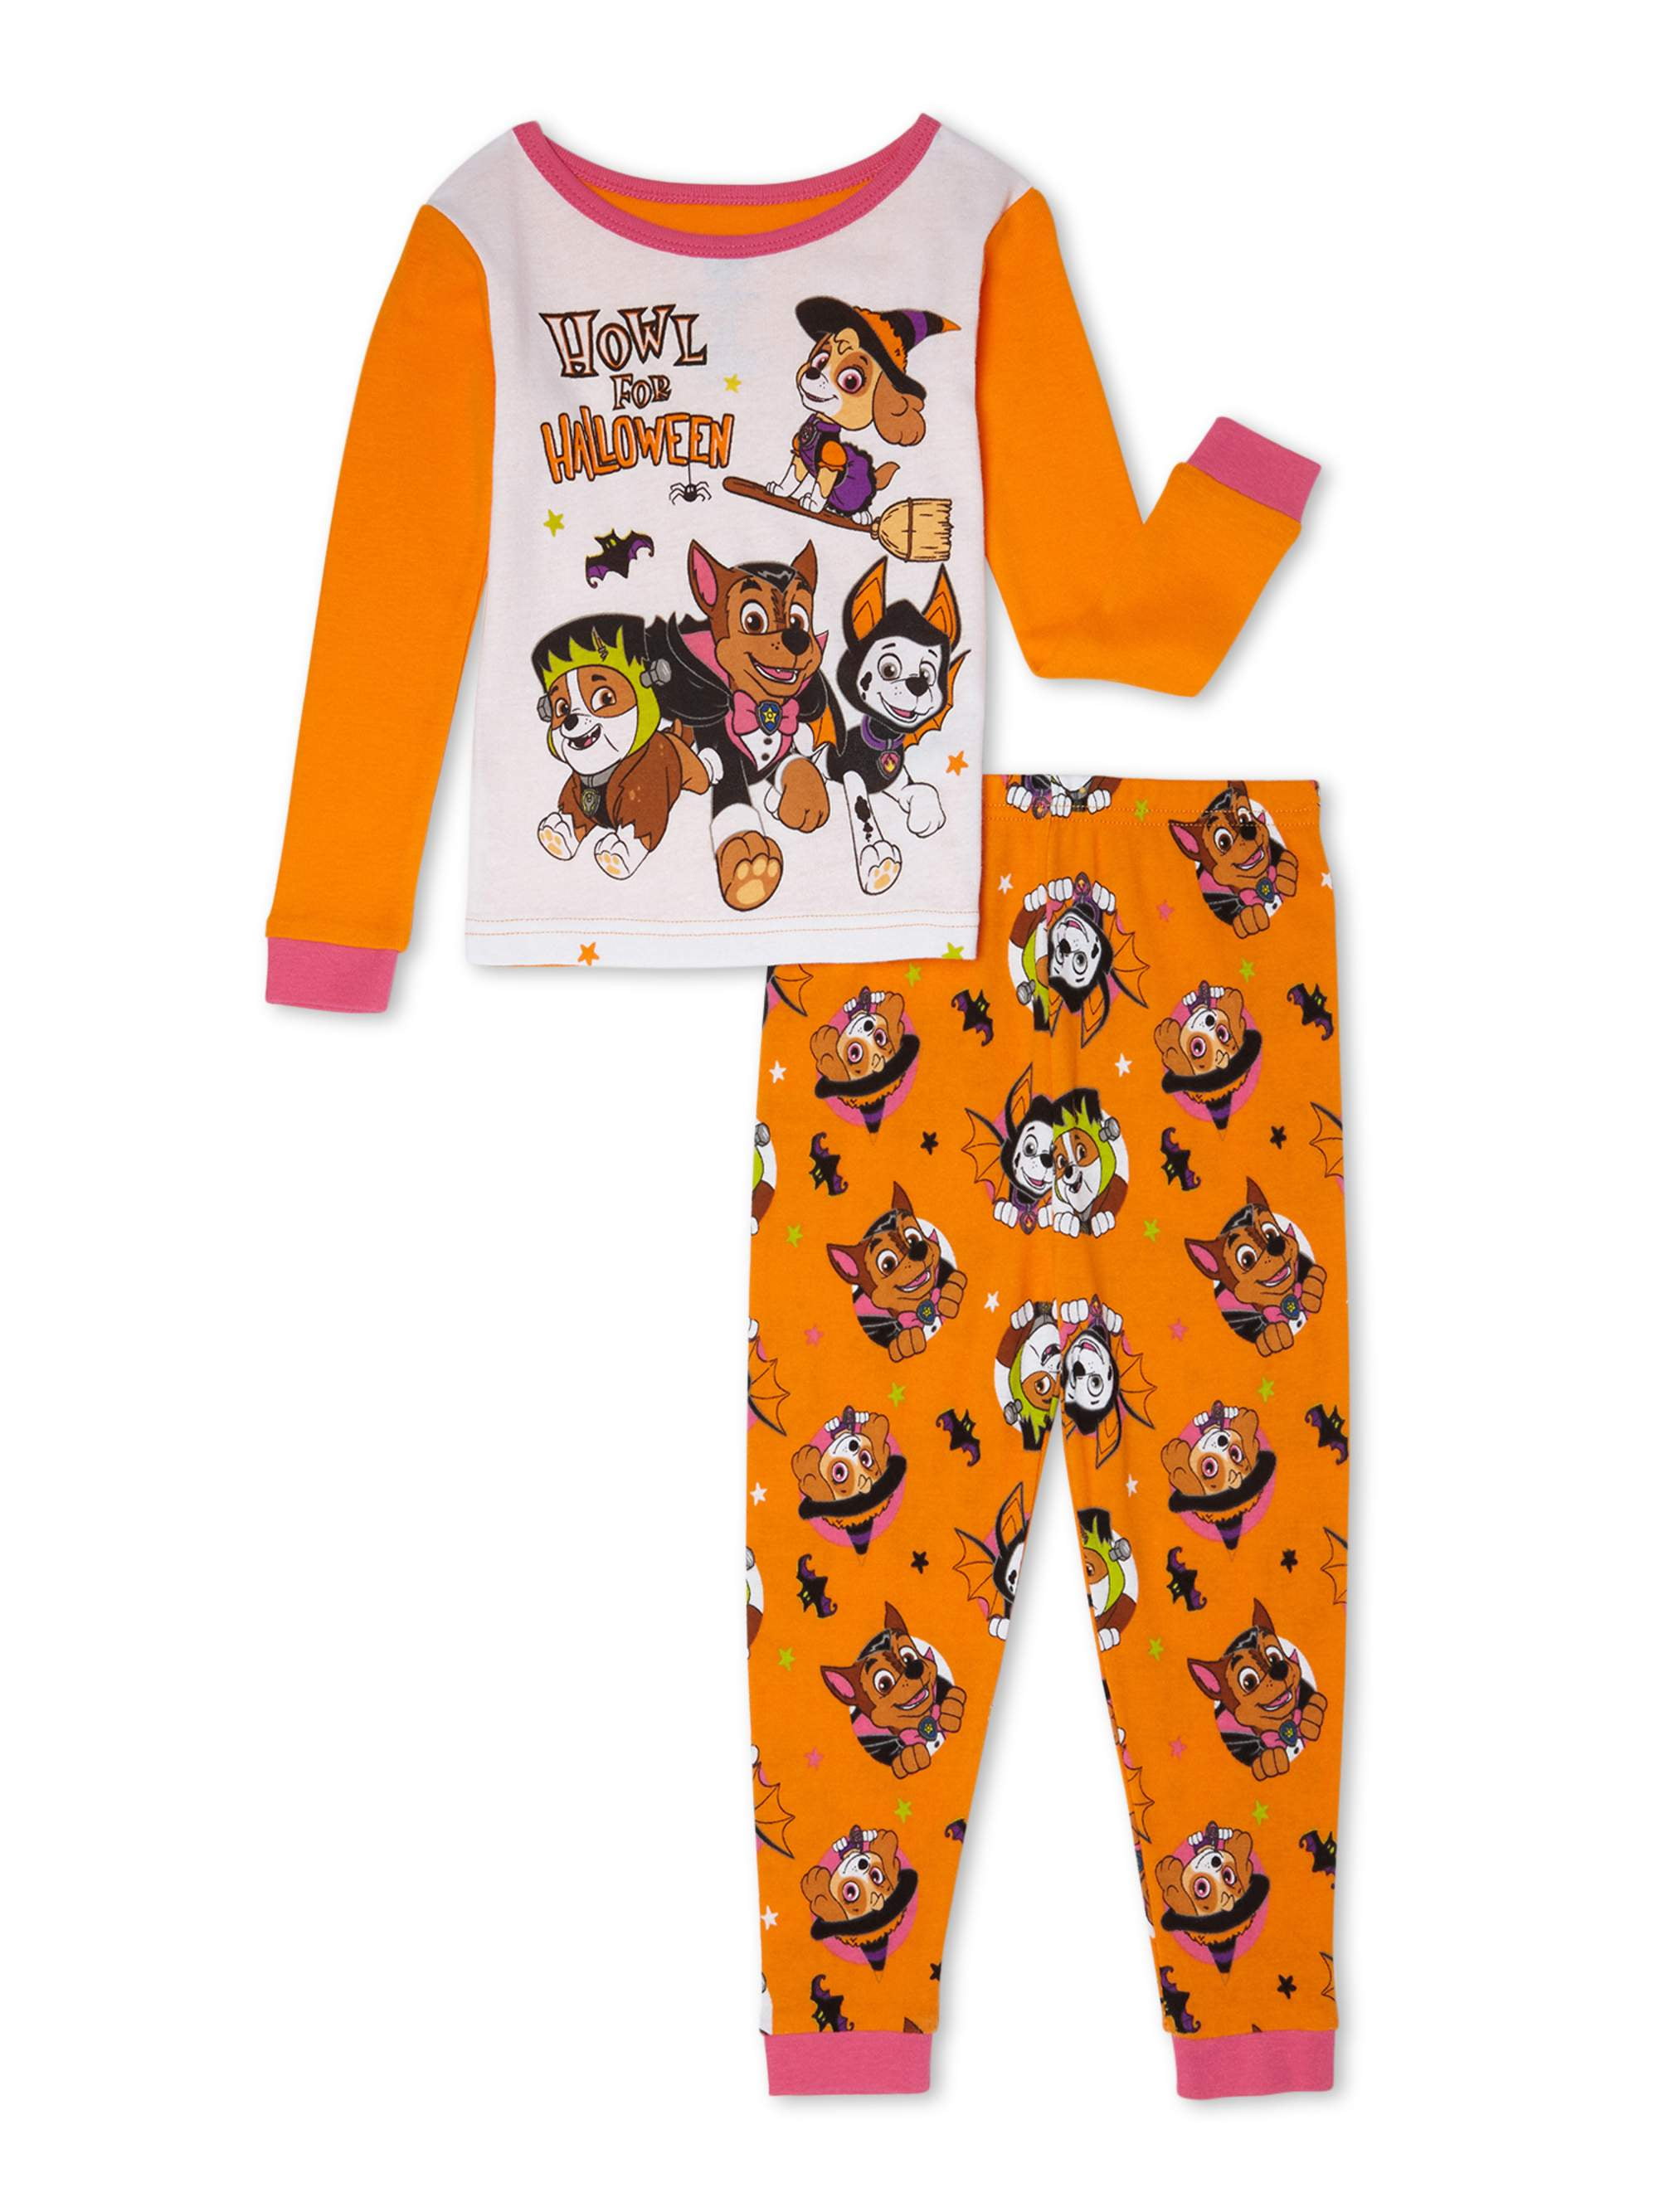 PAW Patrol - Paw Patrol Toddler Girls Halloween Snug Fit Cotton Long ...